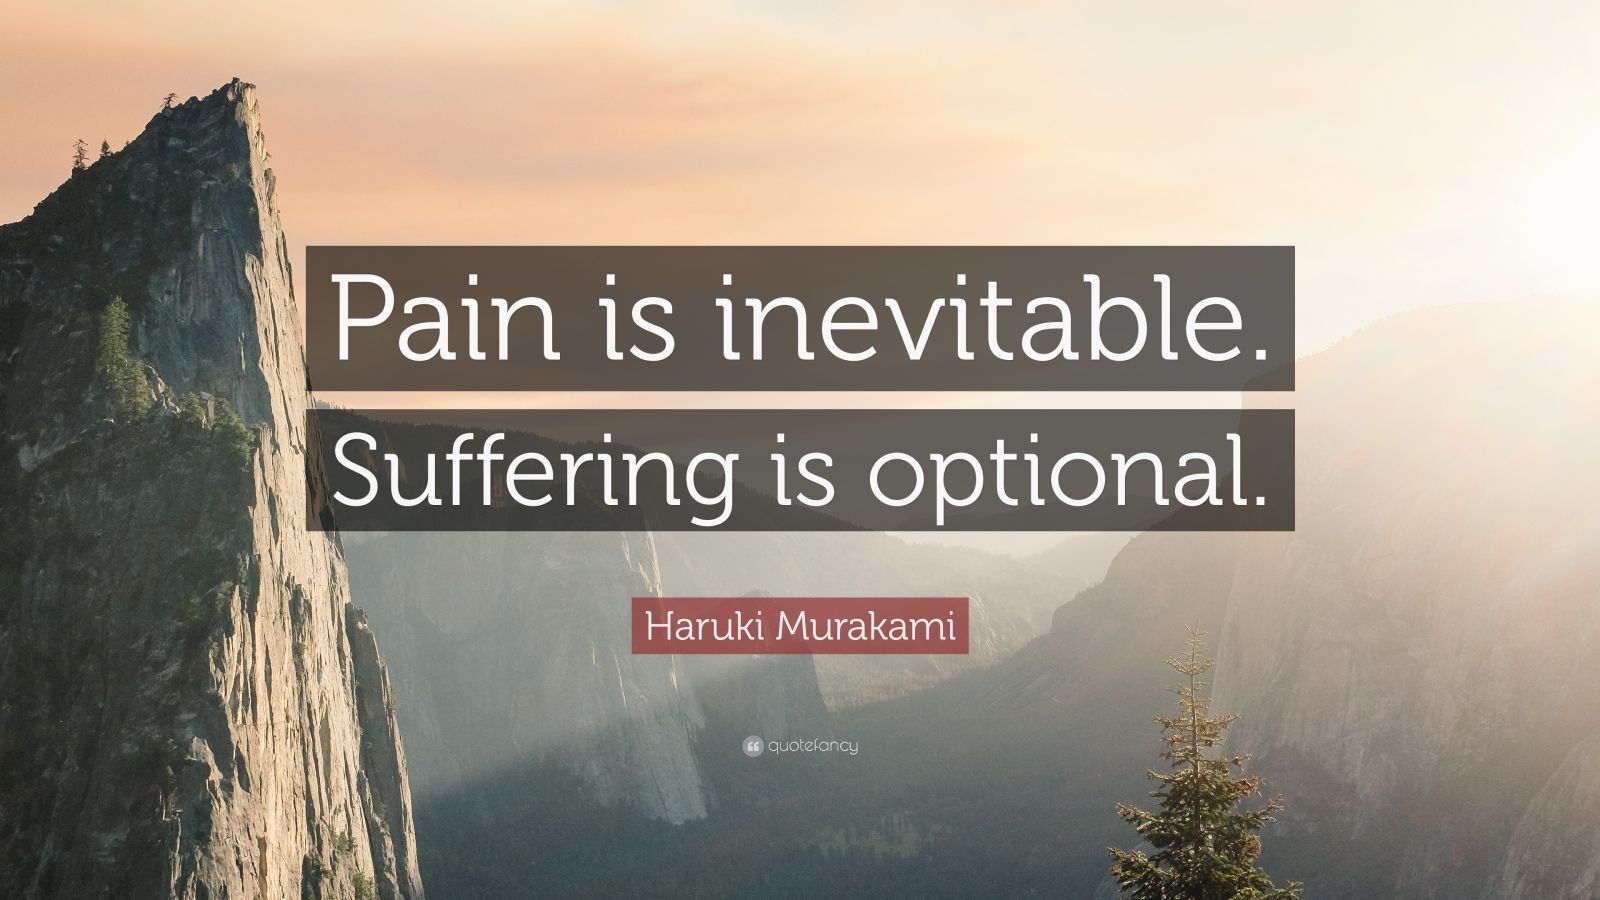 Haruki Murakami Quote: “Pain is inevitable. Suffering is optional.” (24